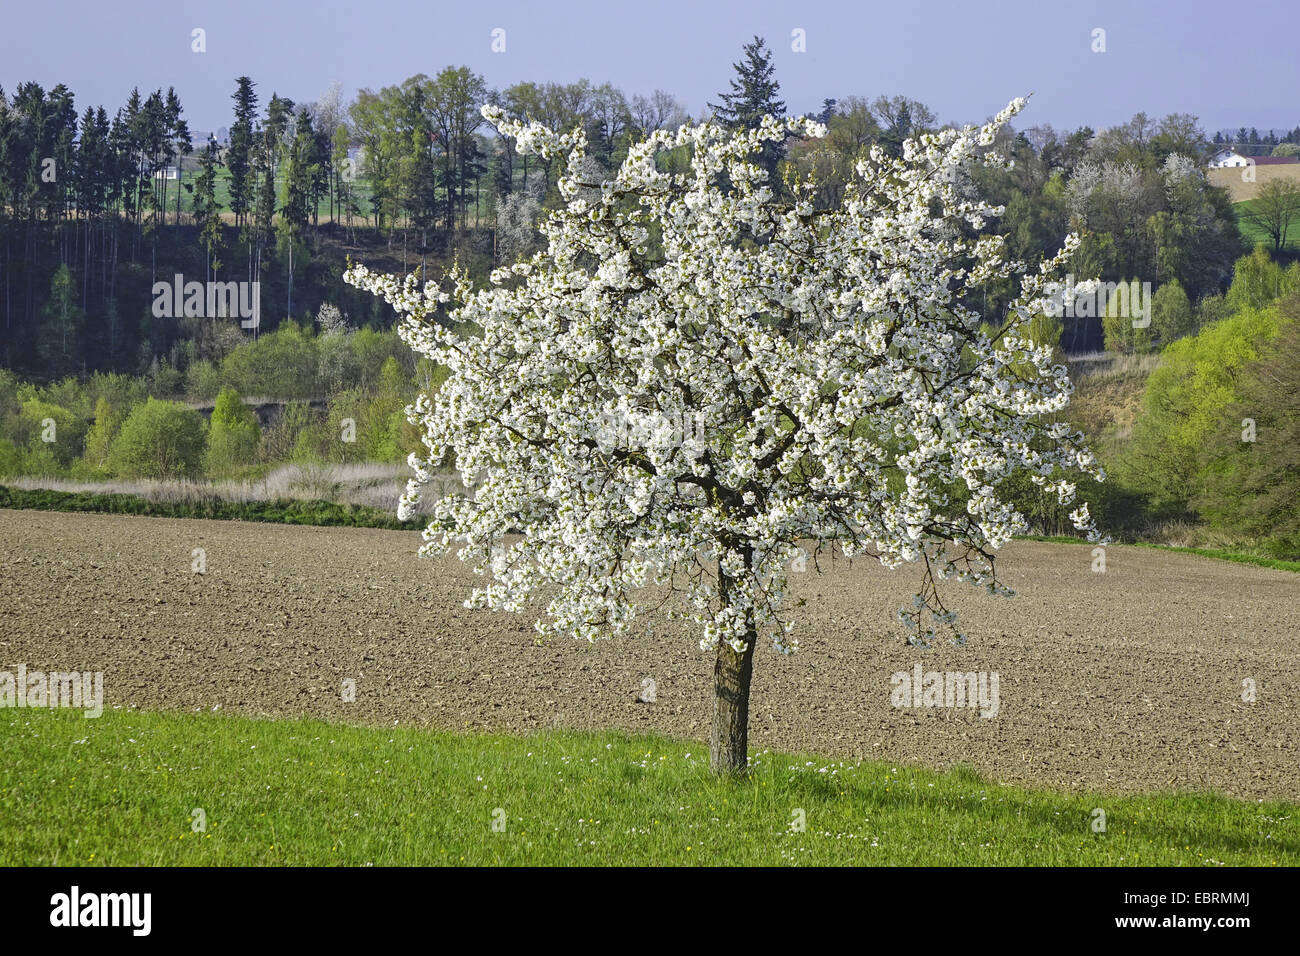 Cherry Tree, le cerisier (Prunus avium), blooming Cherry Tree dans un paysage de champ, Allemagne Banque D'Images